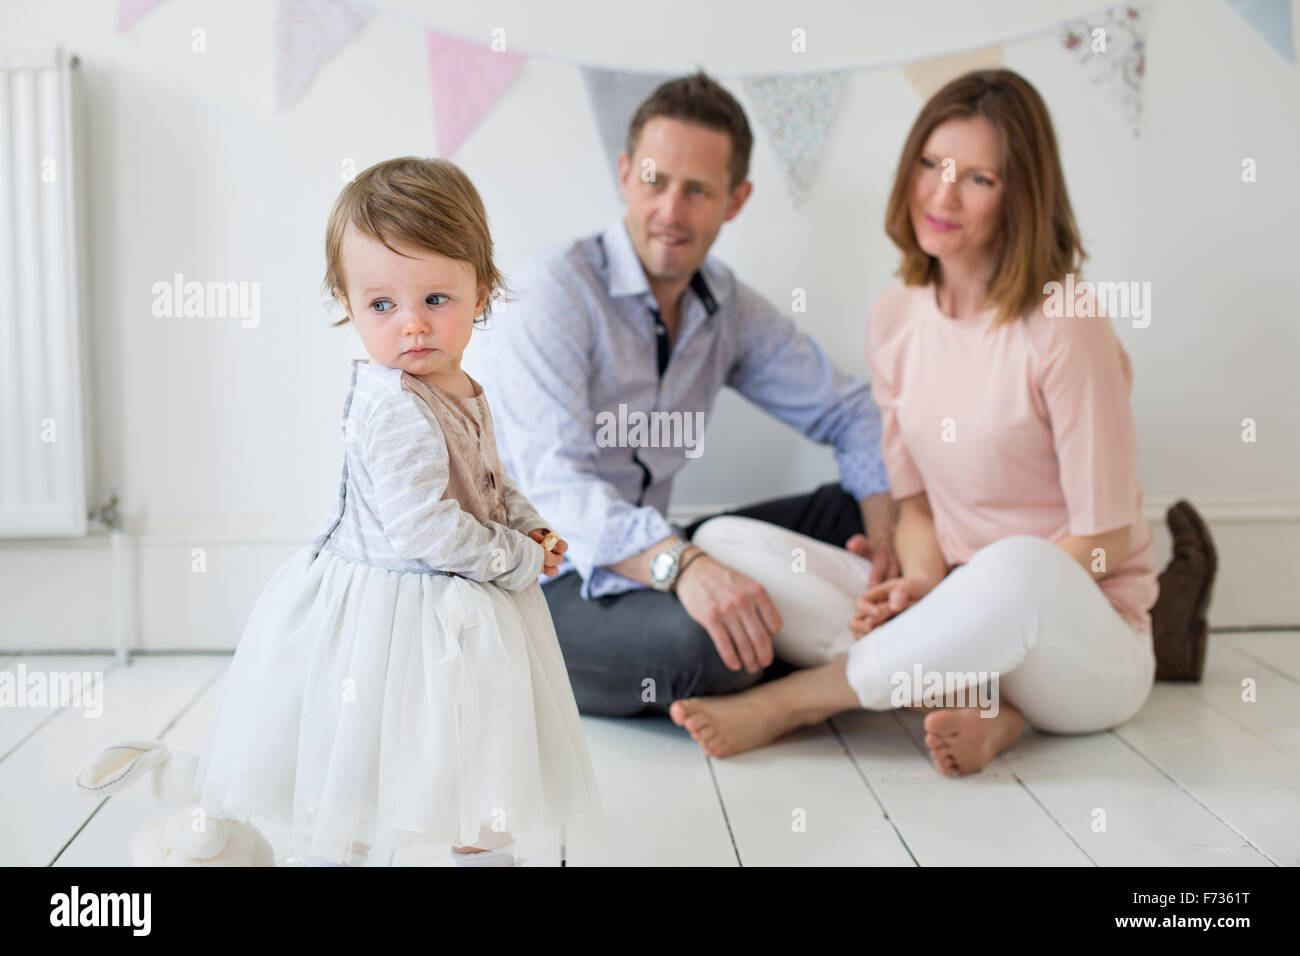 Paar mit ihrer jungen Tochter sitzen auf dem Boden im Studio des Fotografen posieren für ein Foto. Stockfoto